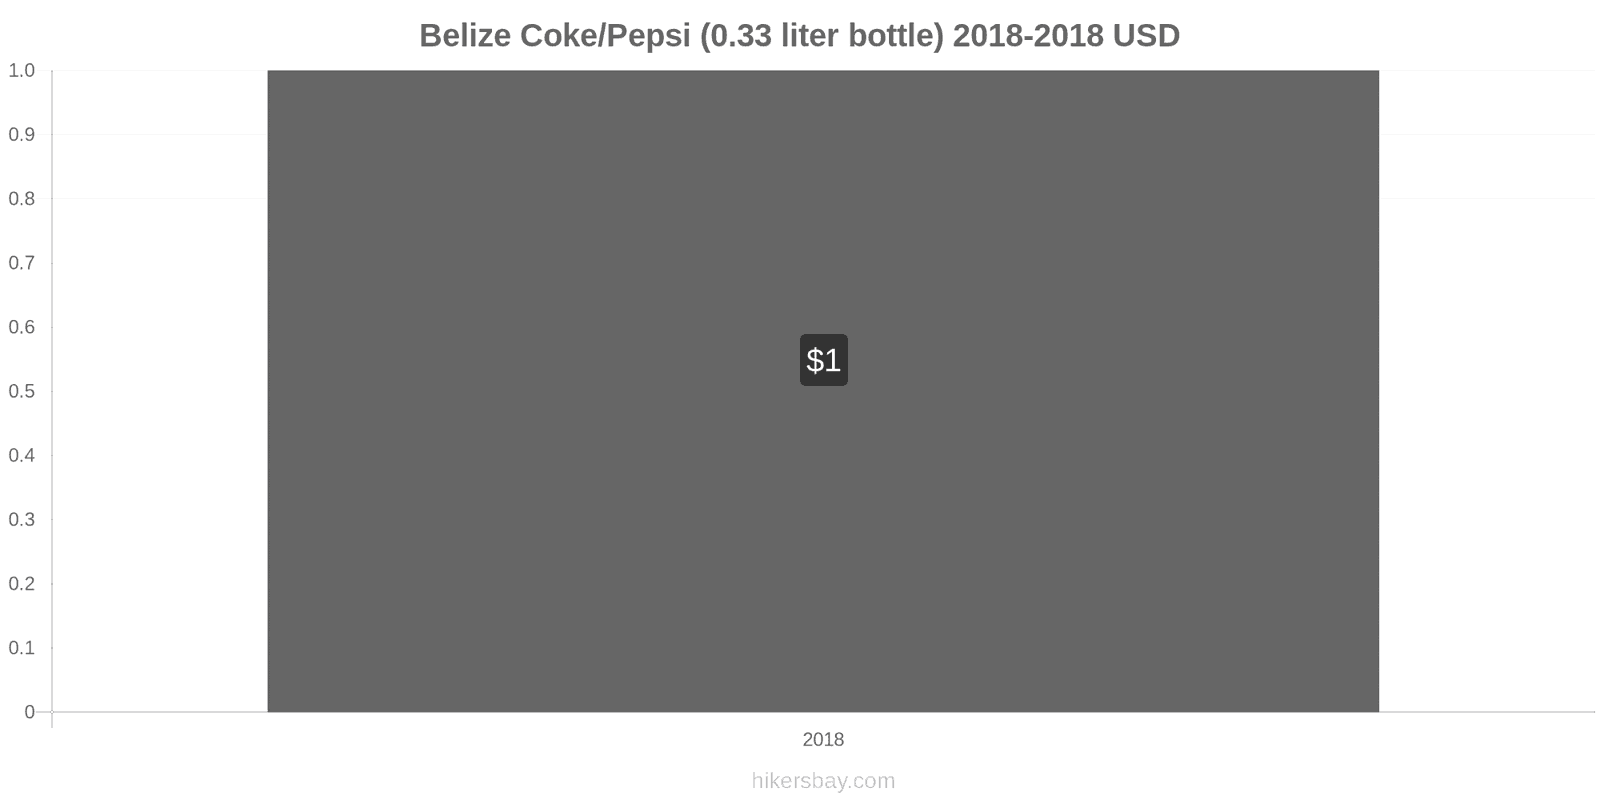 Belize price changes Coke/Pepsi (0.33 liter bottle) hikersbay.com